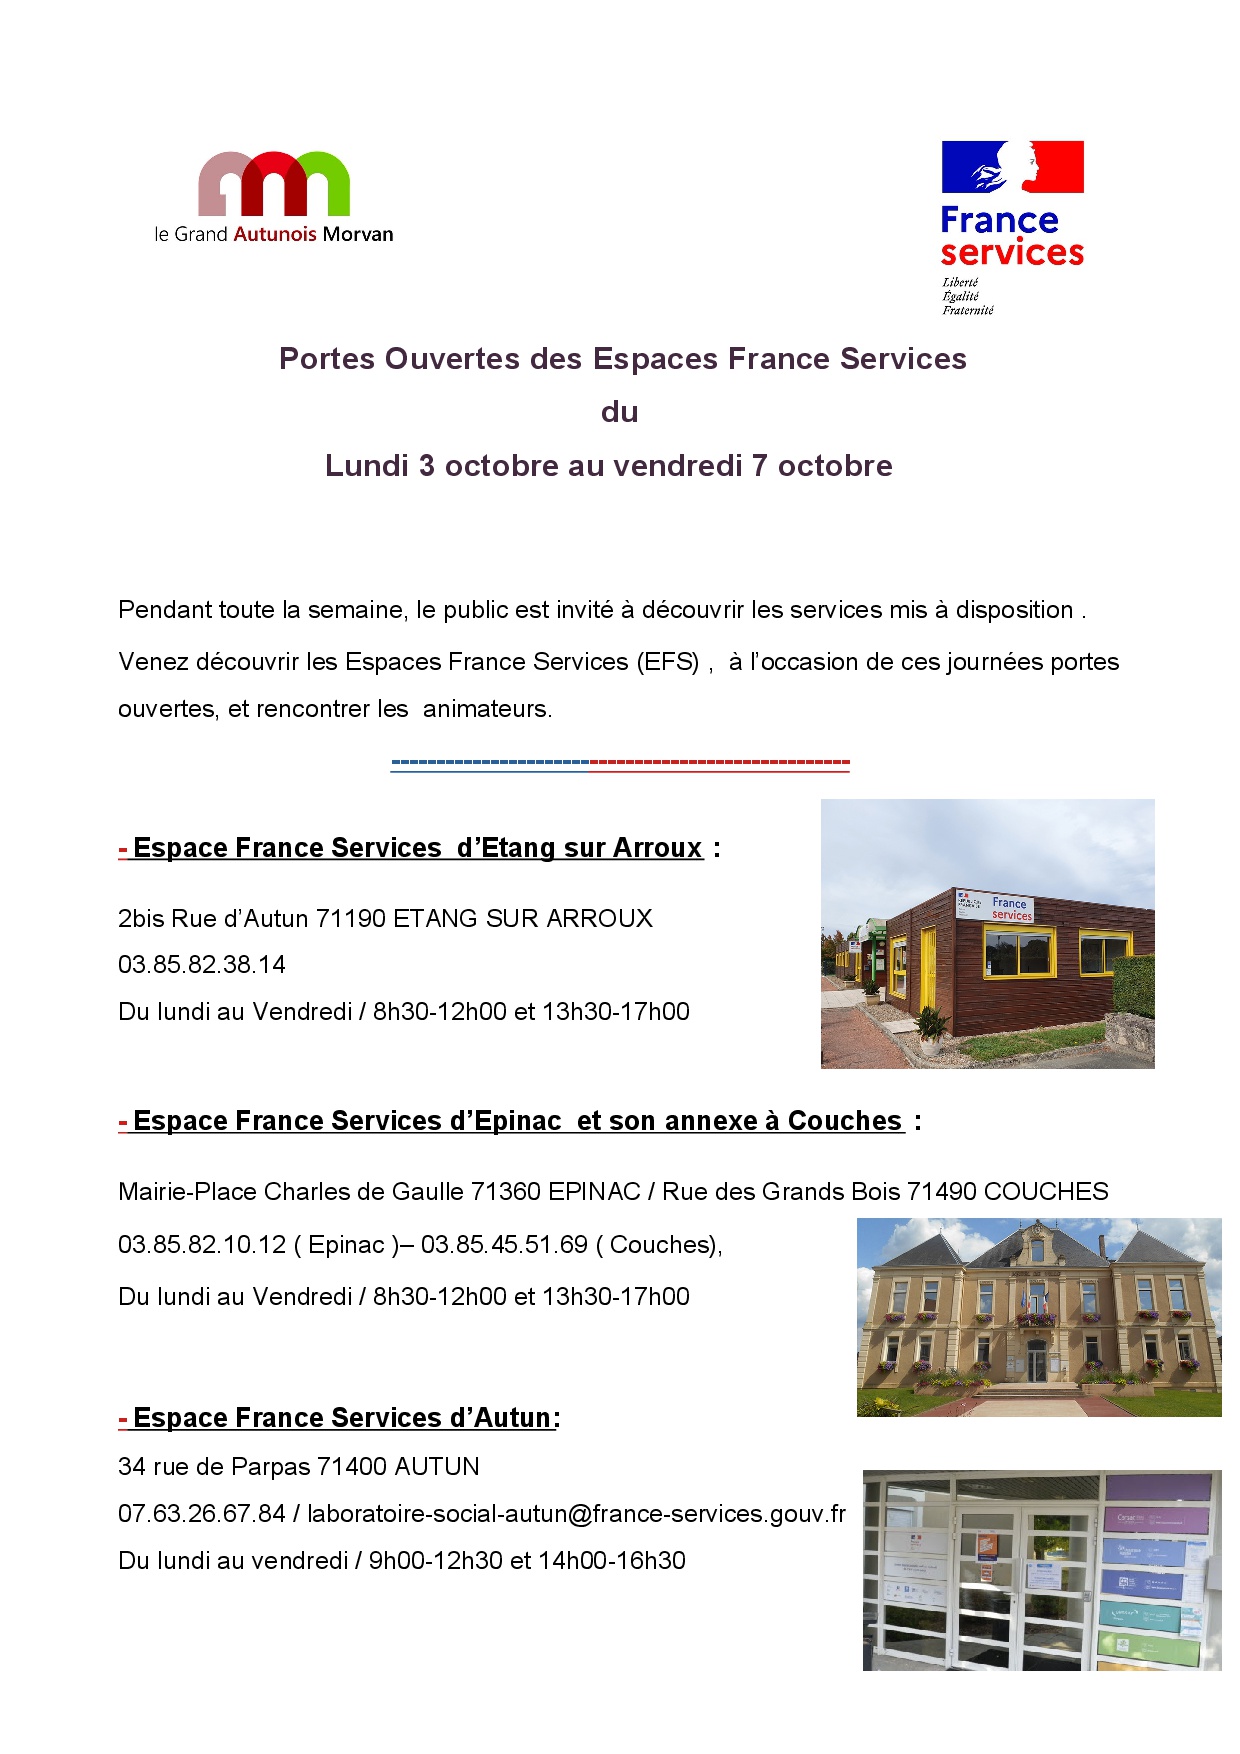 Portes ouvertes des espaces France Services